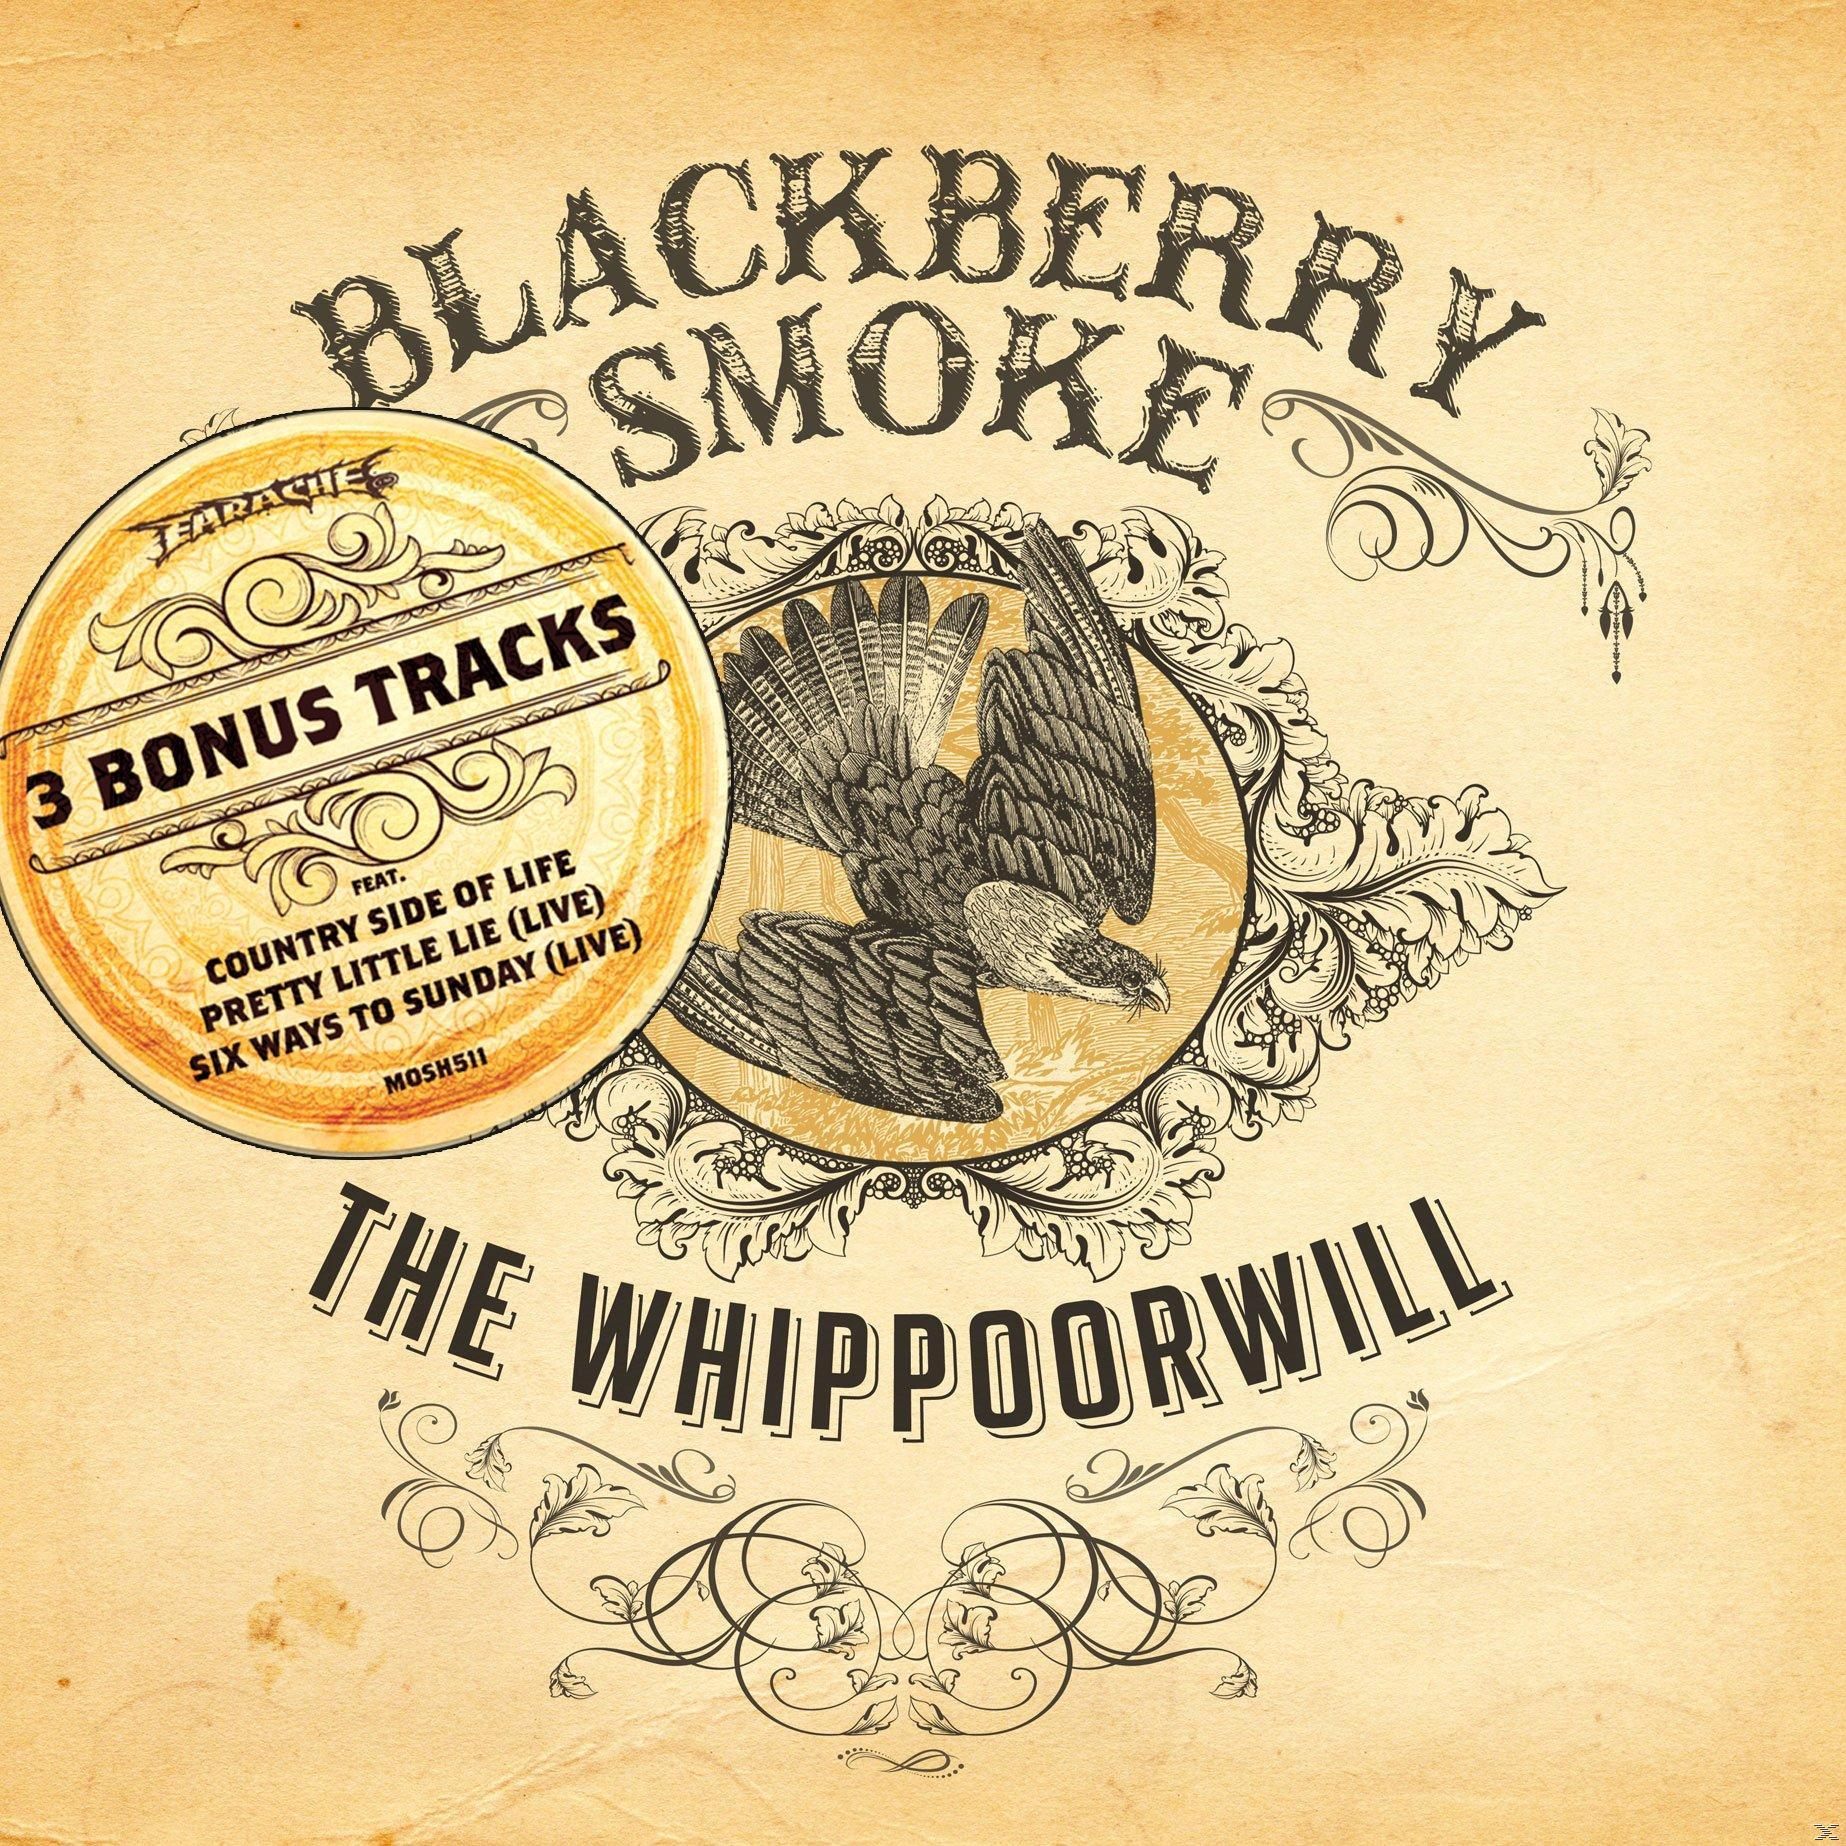 Blackberry Smoke - The - (Vinyl) Whippoorwill